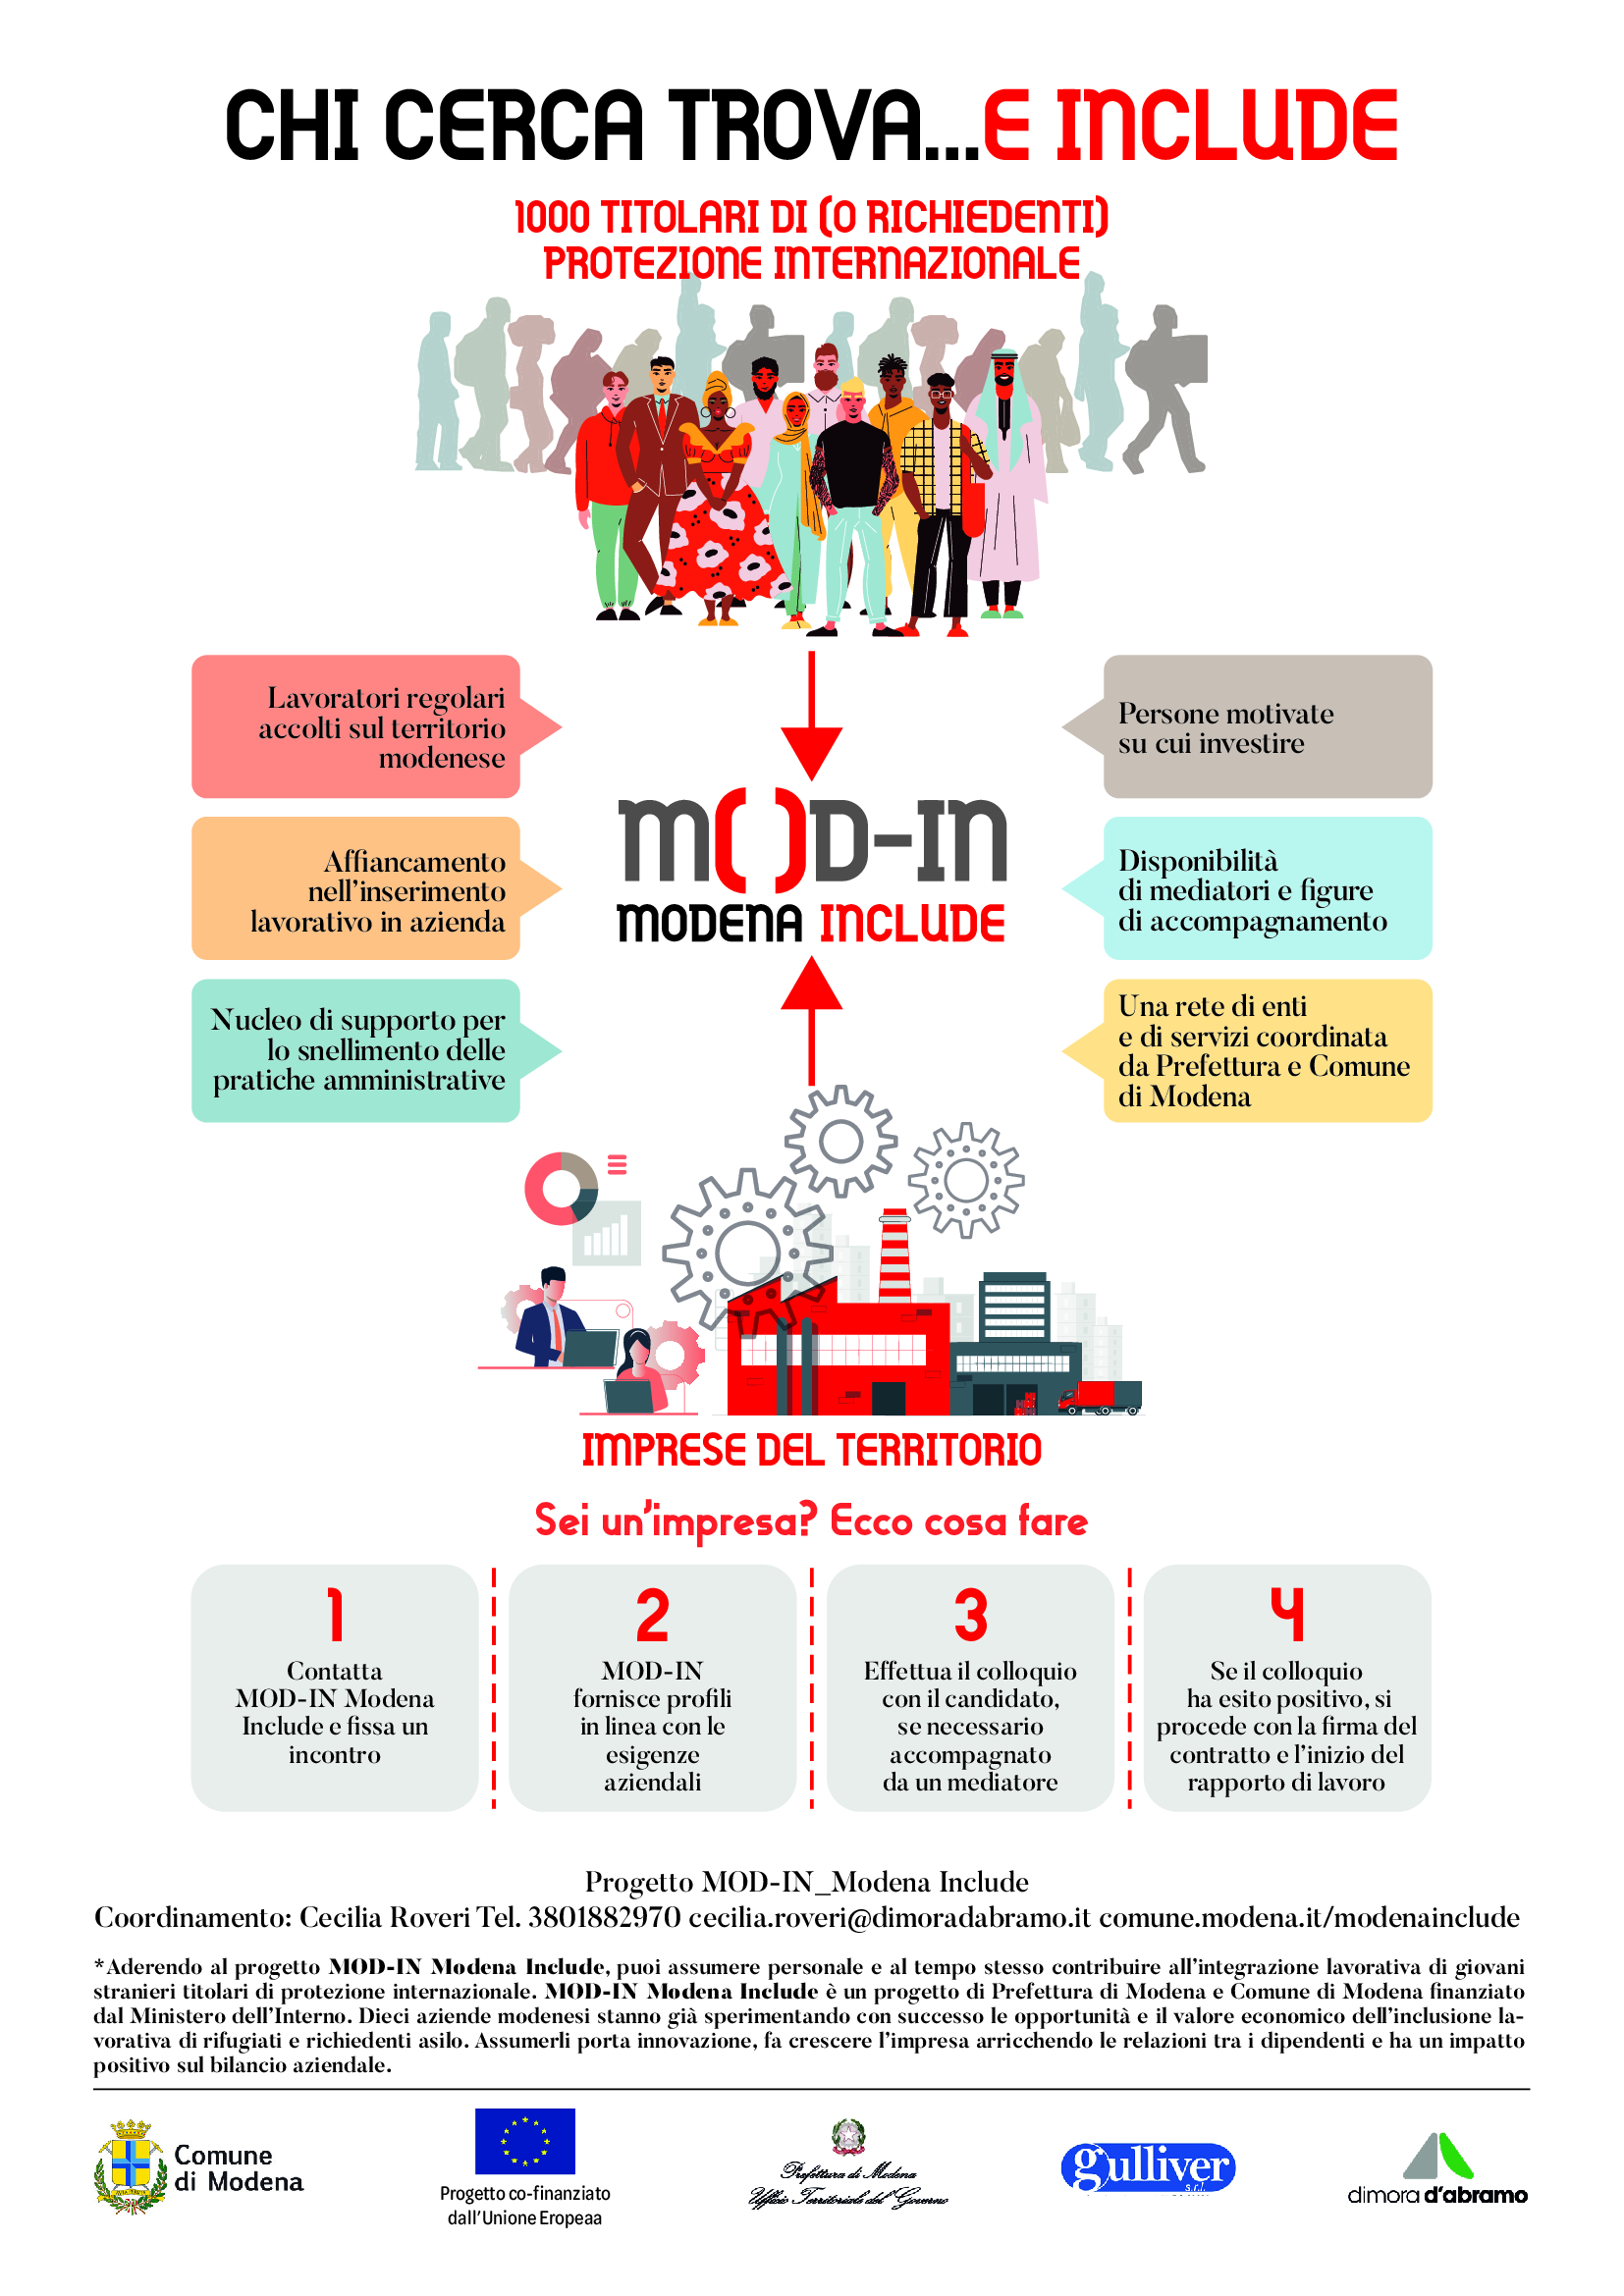 MOD-IN MODena INclude: un progetto promosso dalla Prefettura di Modena, Comune di Modena, Cooperativa Gulliver e Dimora d’Abramo.